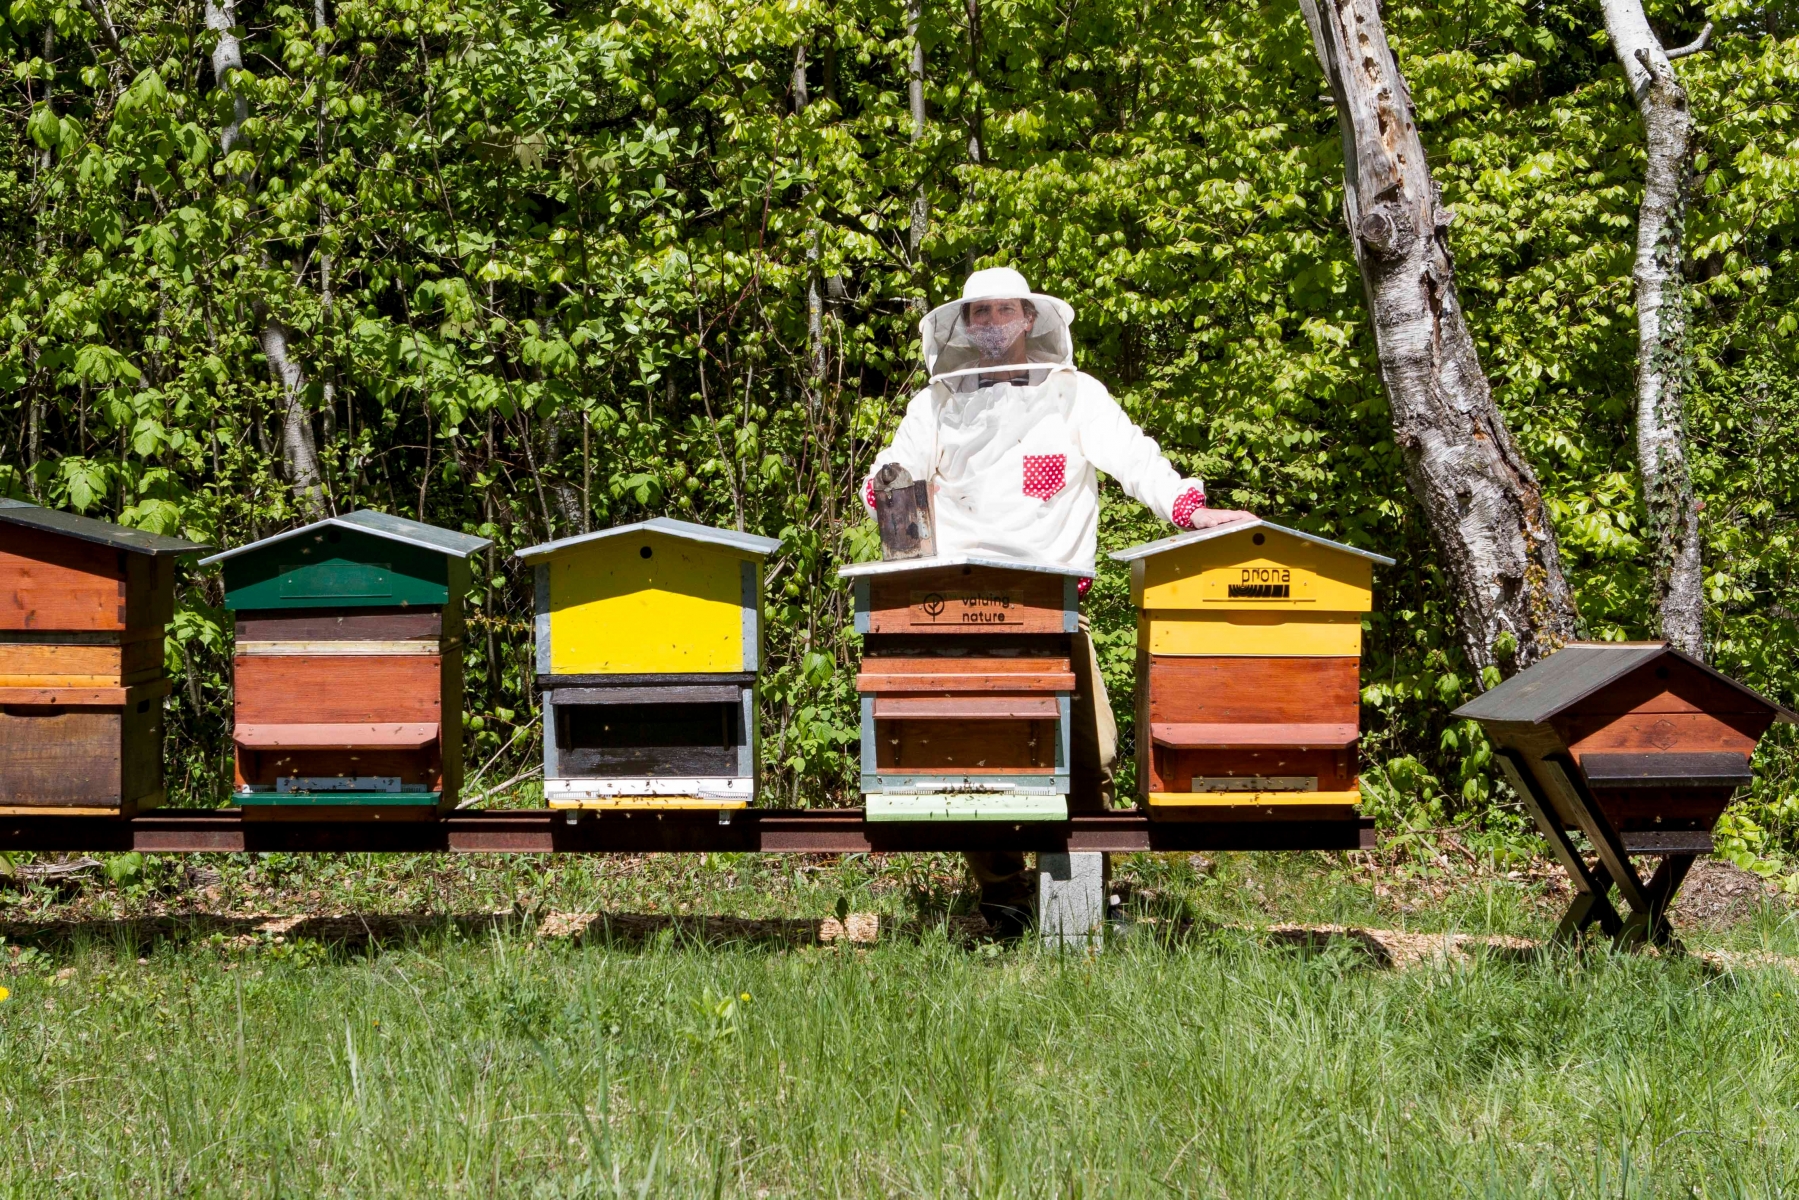 Ruchers de l'association Mellifera qui promouvoit l'apiculture et vise à sensibiliser la population à l'importance des abeilles pour notre environnement.

Les Rochettes, Aubonne, jeudi 28 avrl 2016. Ruchers Association Mellifera